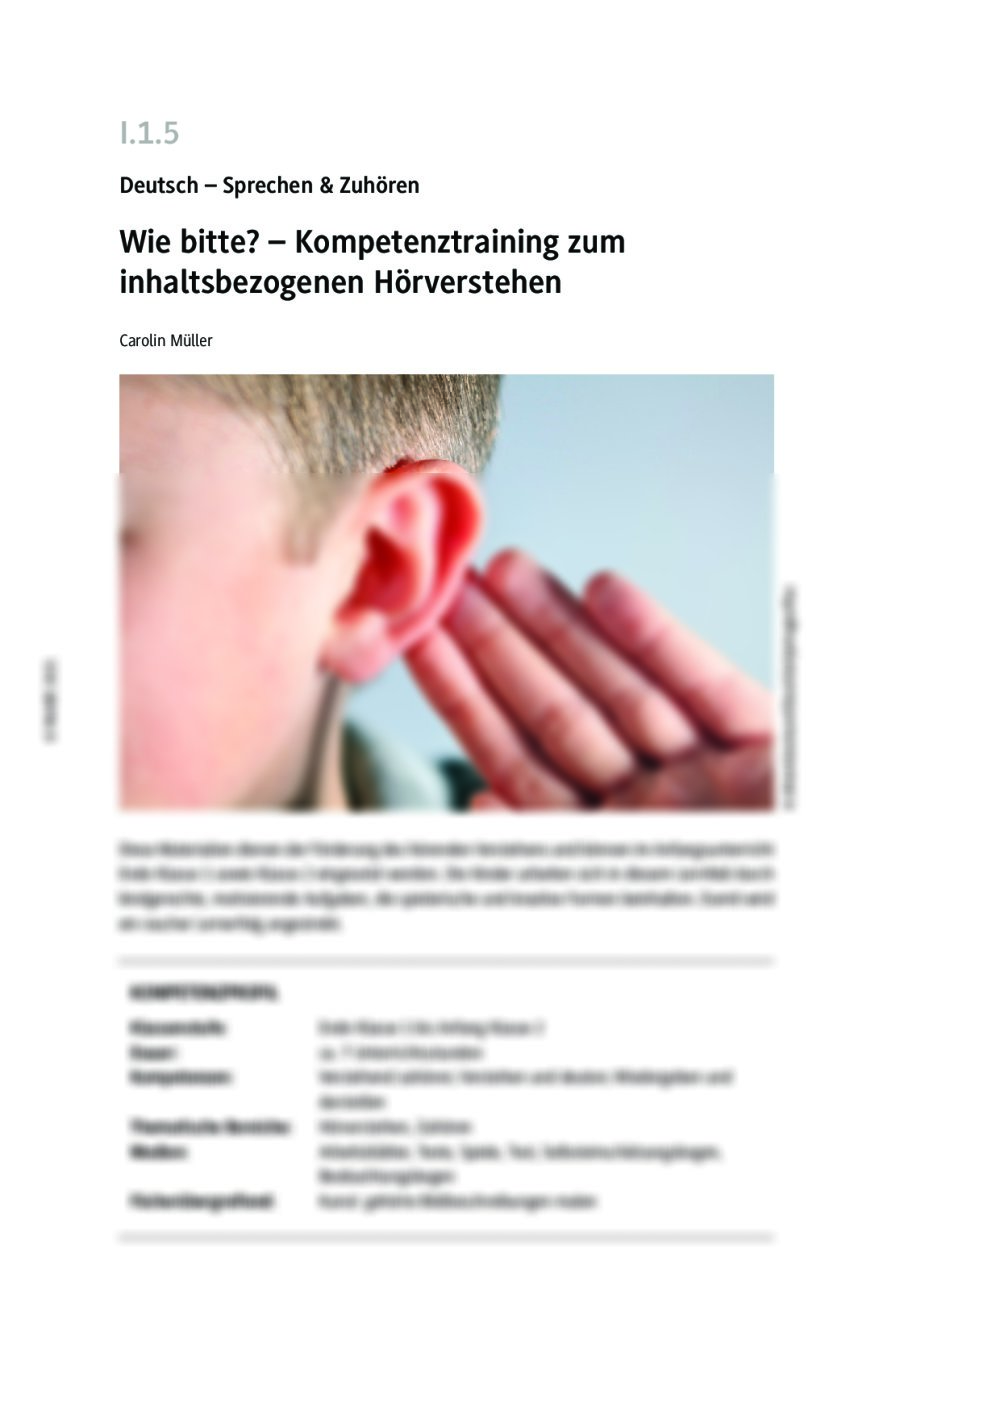 Kompetenztraining zum inhaltsbezogenen Hörverstehen - Seite 1